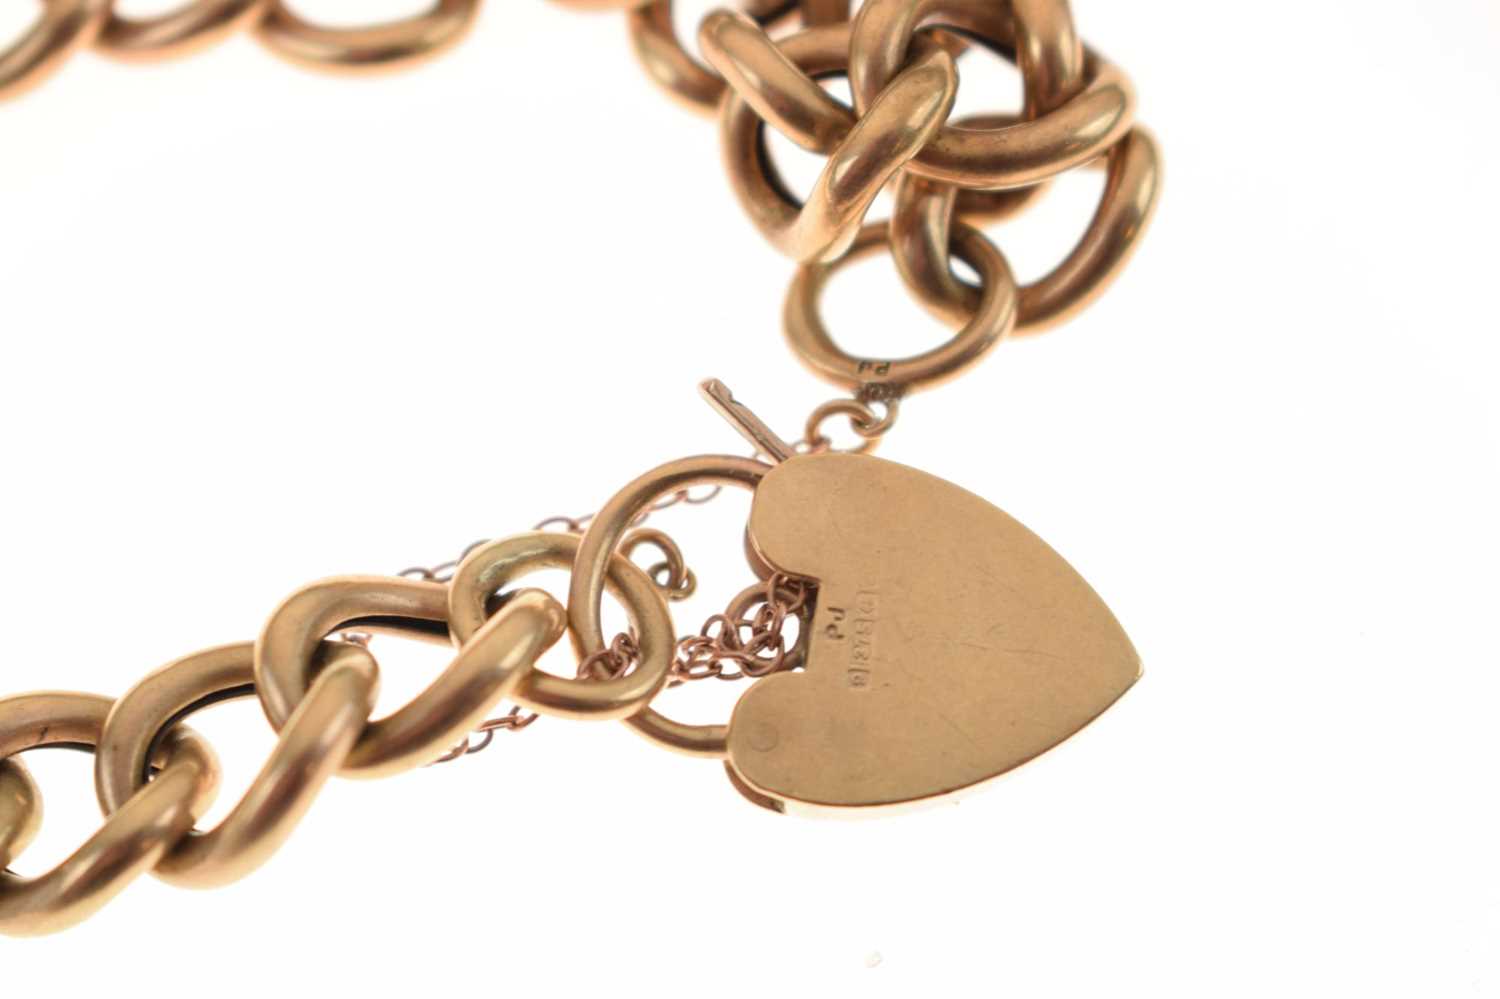 9ct gold curb link bracelet - Image 3 of 4